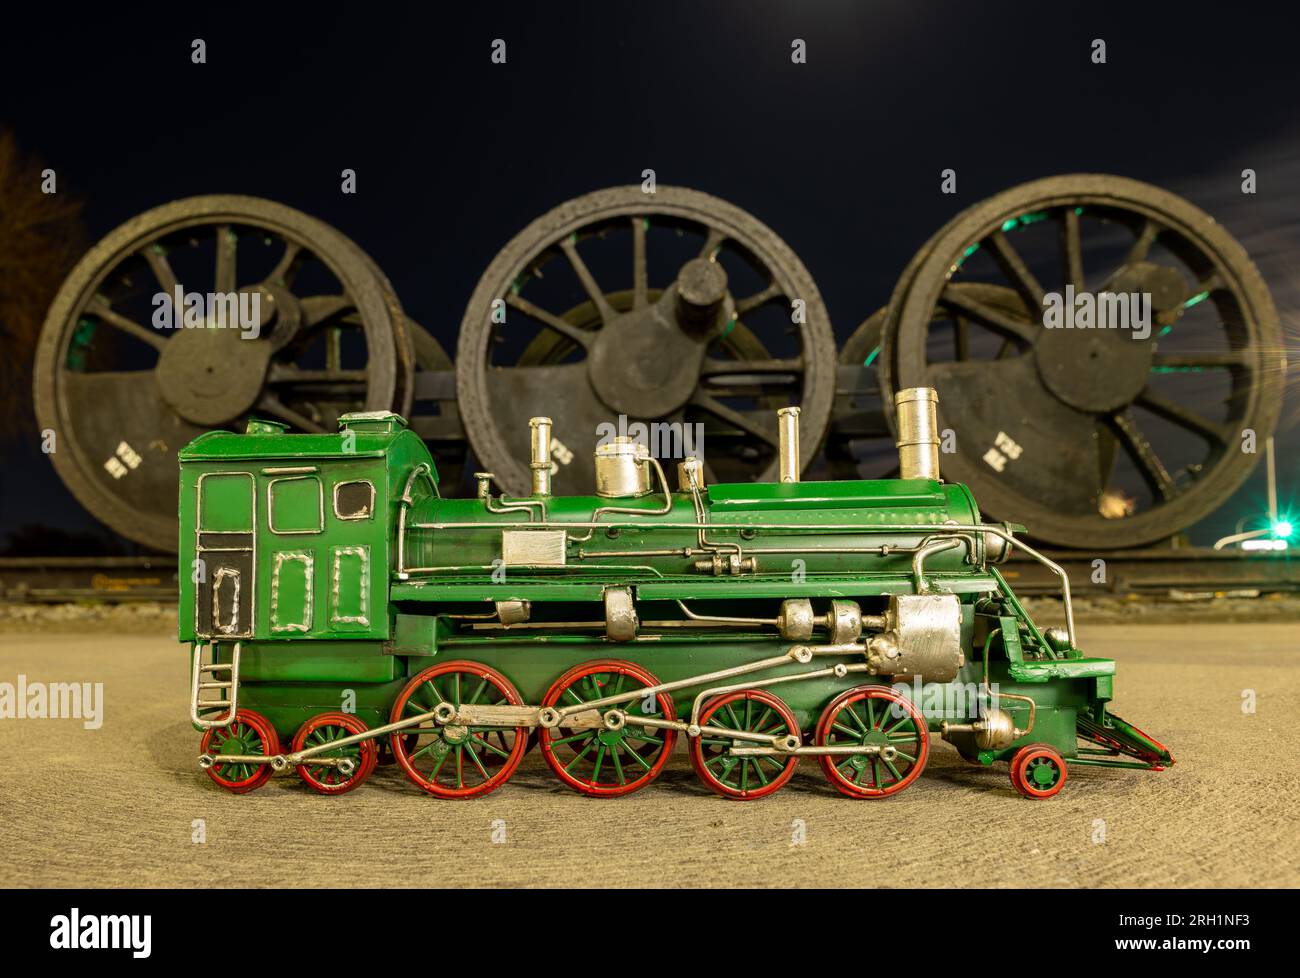 Modello di locomotiva a vapore verde con ruote rosse davanti a una serie di vecchie ruote per locomotive a vapore. Foto Stock